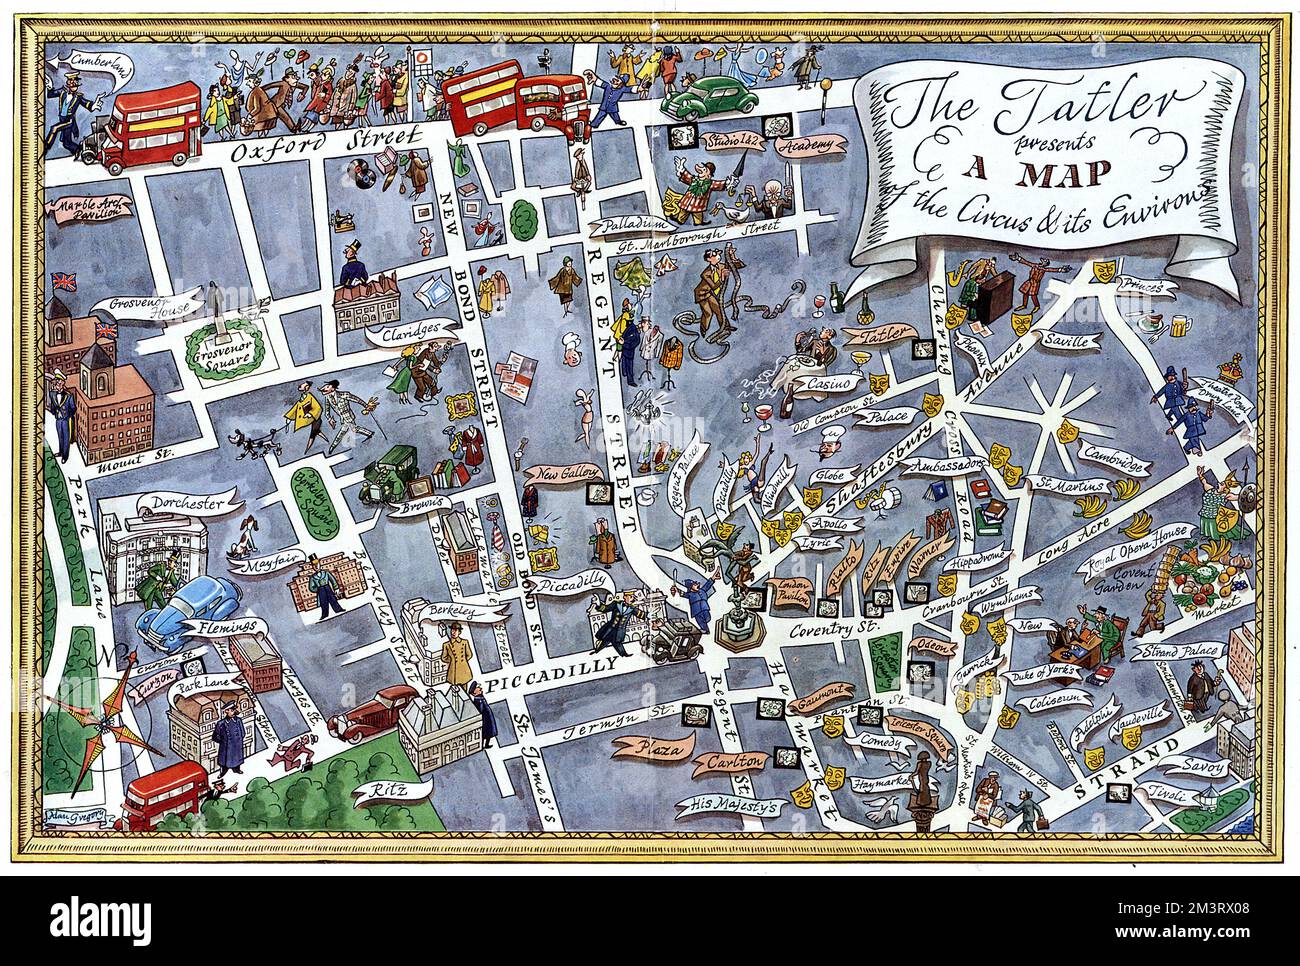 Una favolosa mappa illustrativa del West End di Londra, che si concentra sulla zona che si irradia dal Piccadilly Circus, puntando le strade principali, gli hotel, i locali notturni, i teatri e i punti di riferimento. Data: 1950 Foto Stock